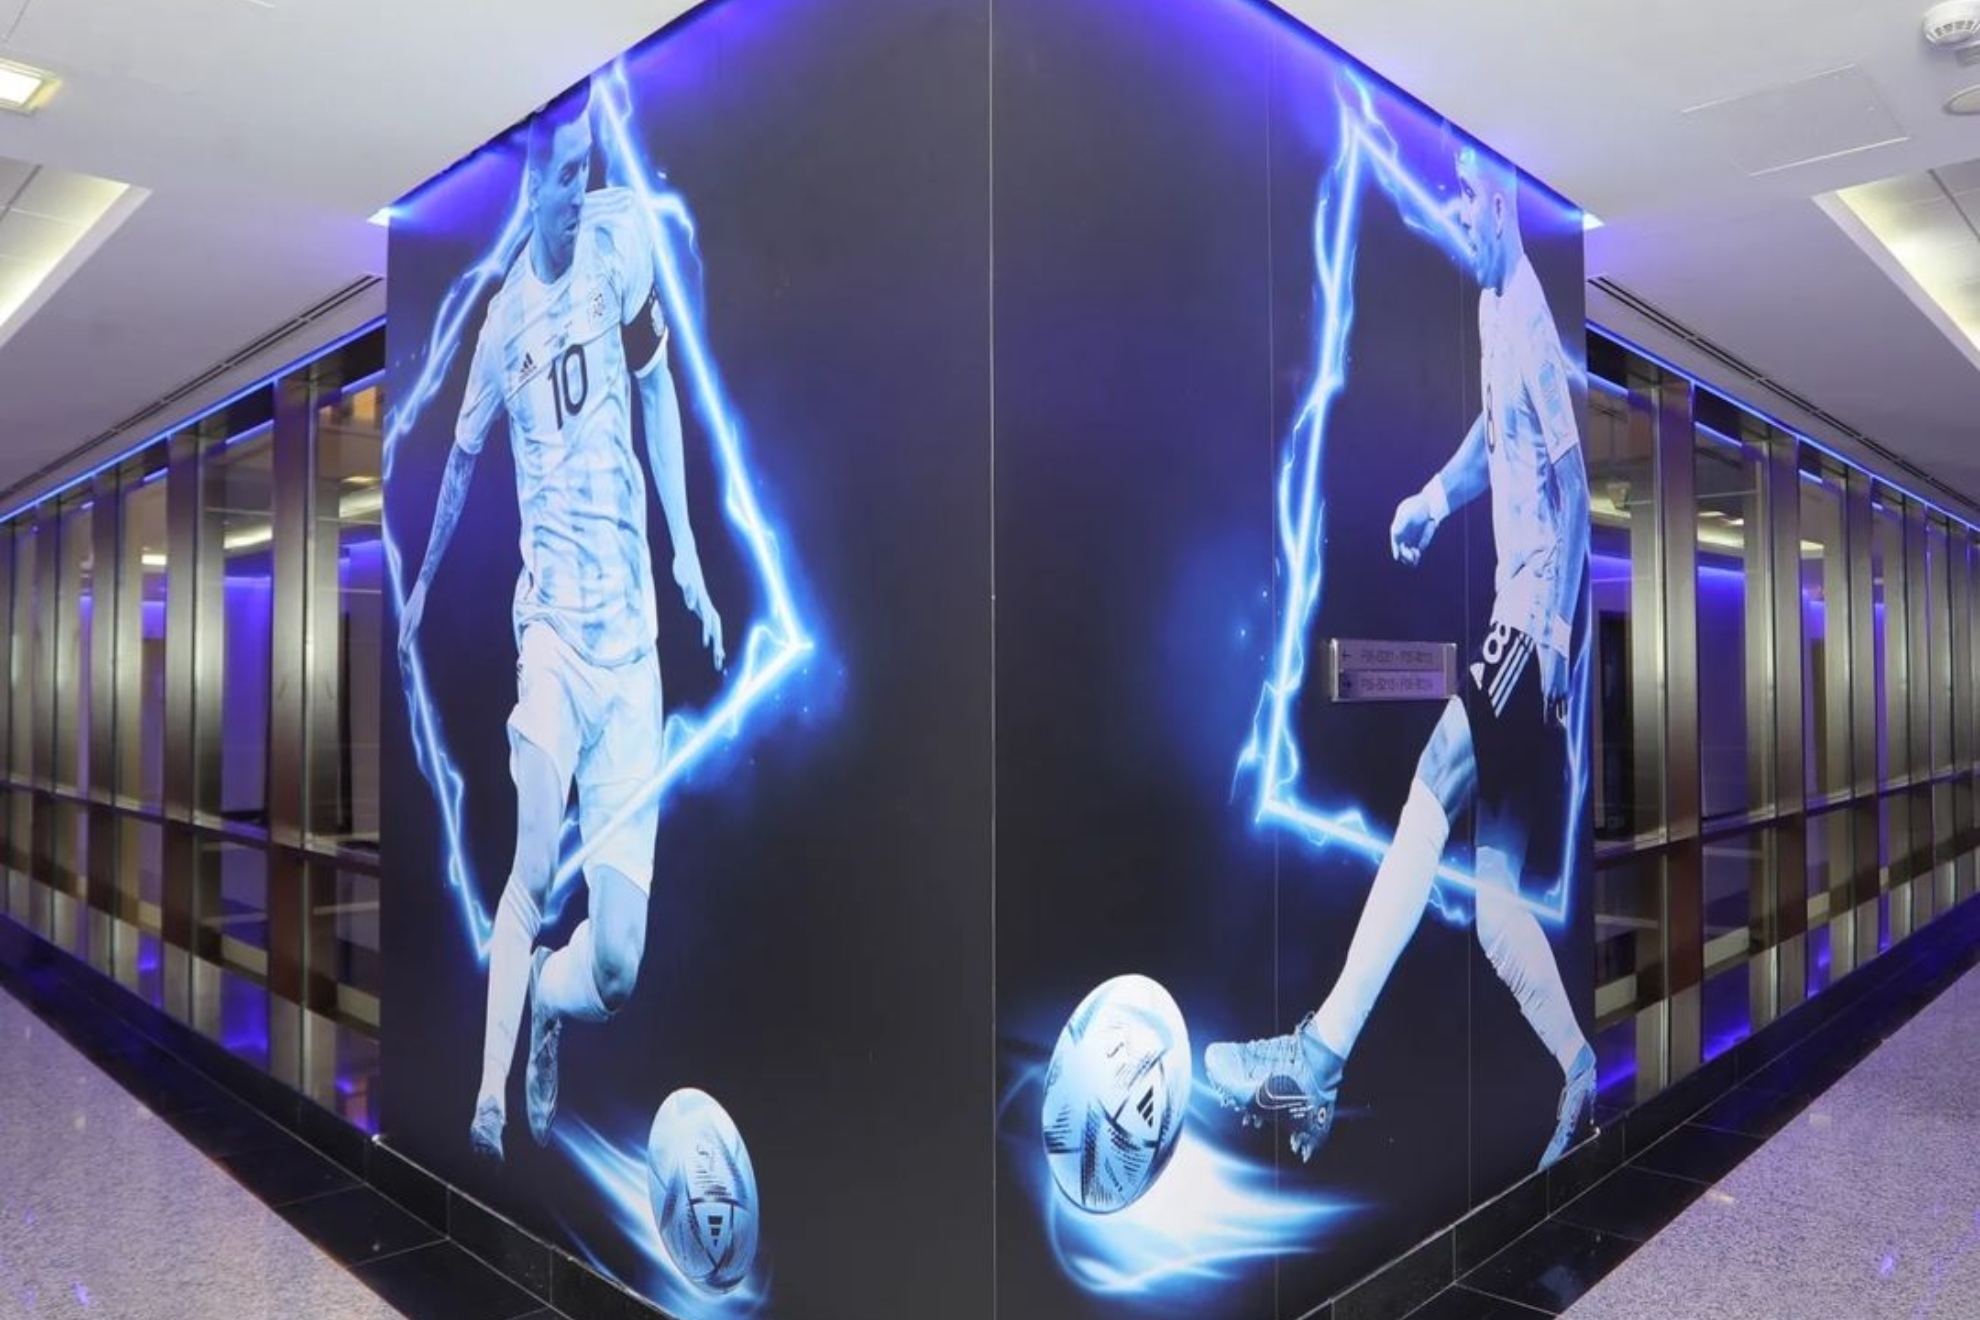 La habitación de Messi durante el Mundial de Qatar será convertida en un museo